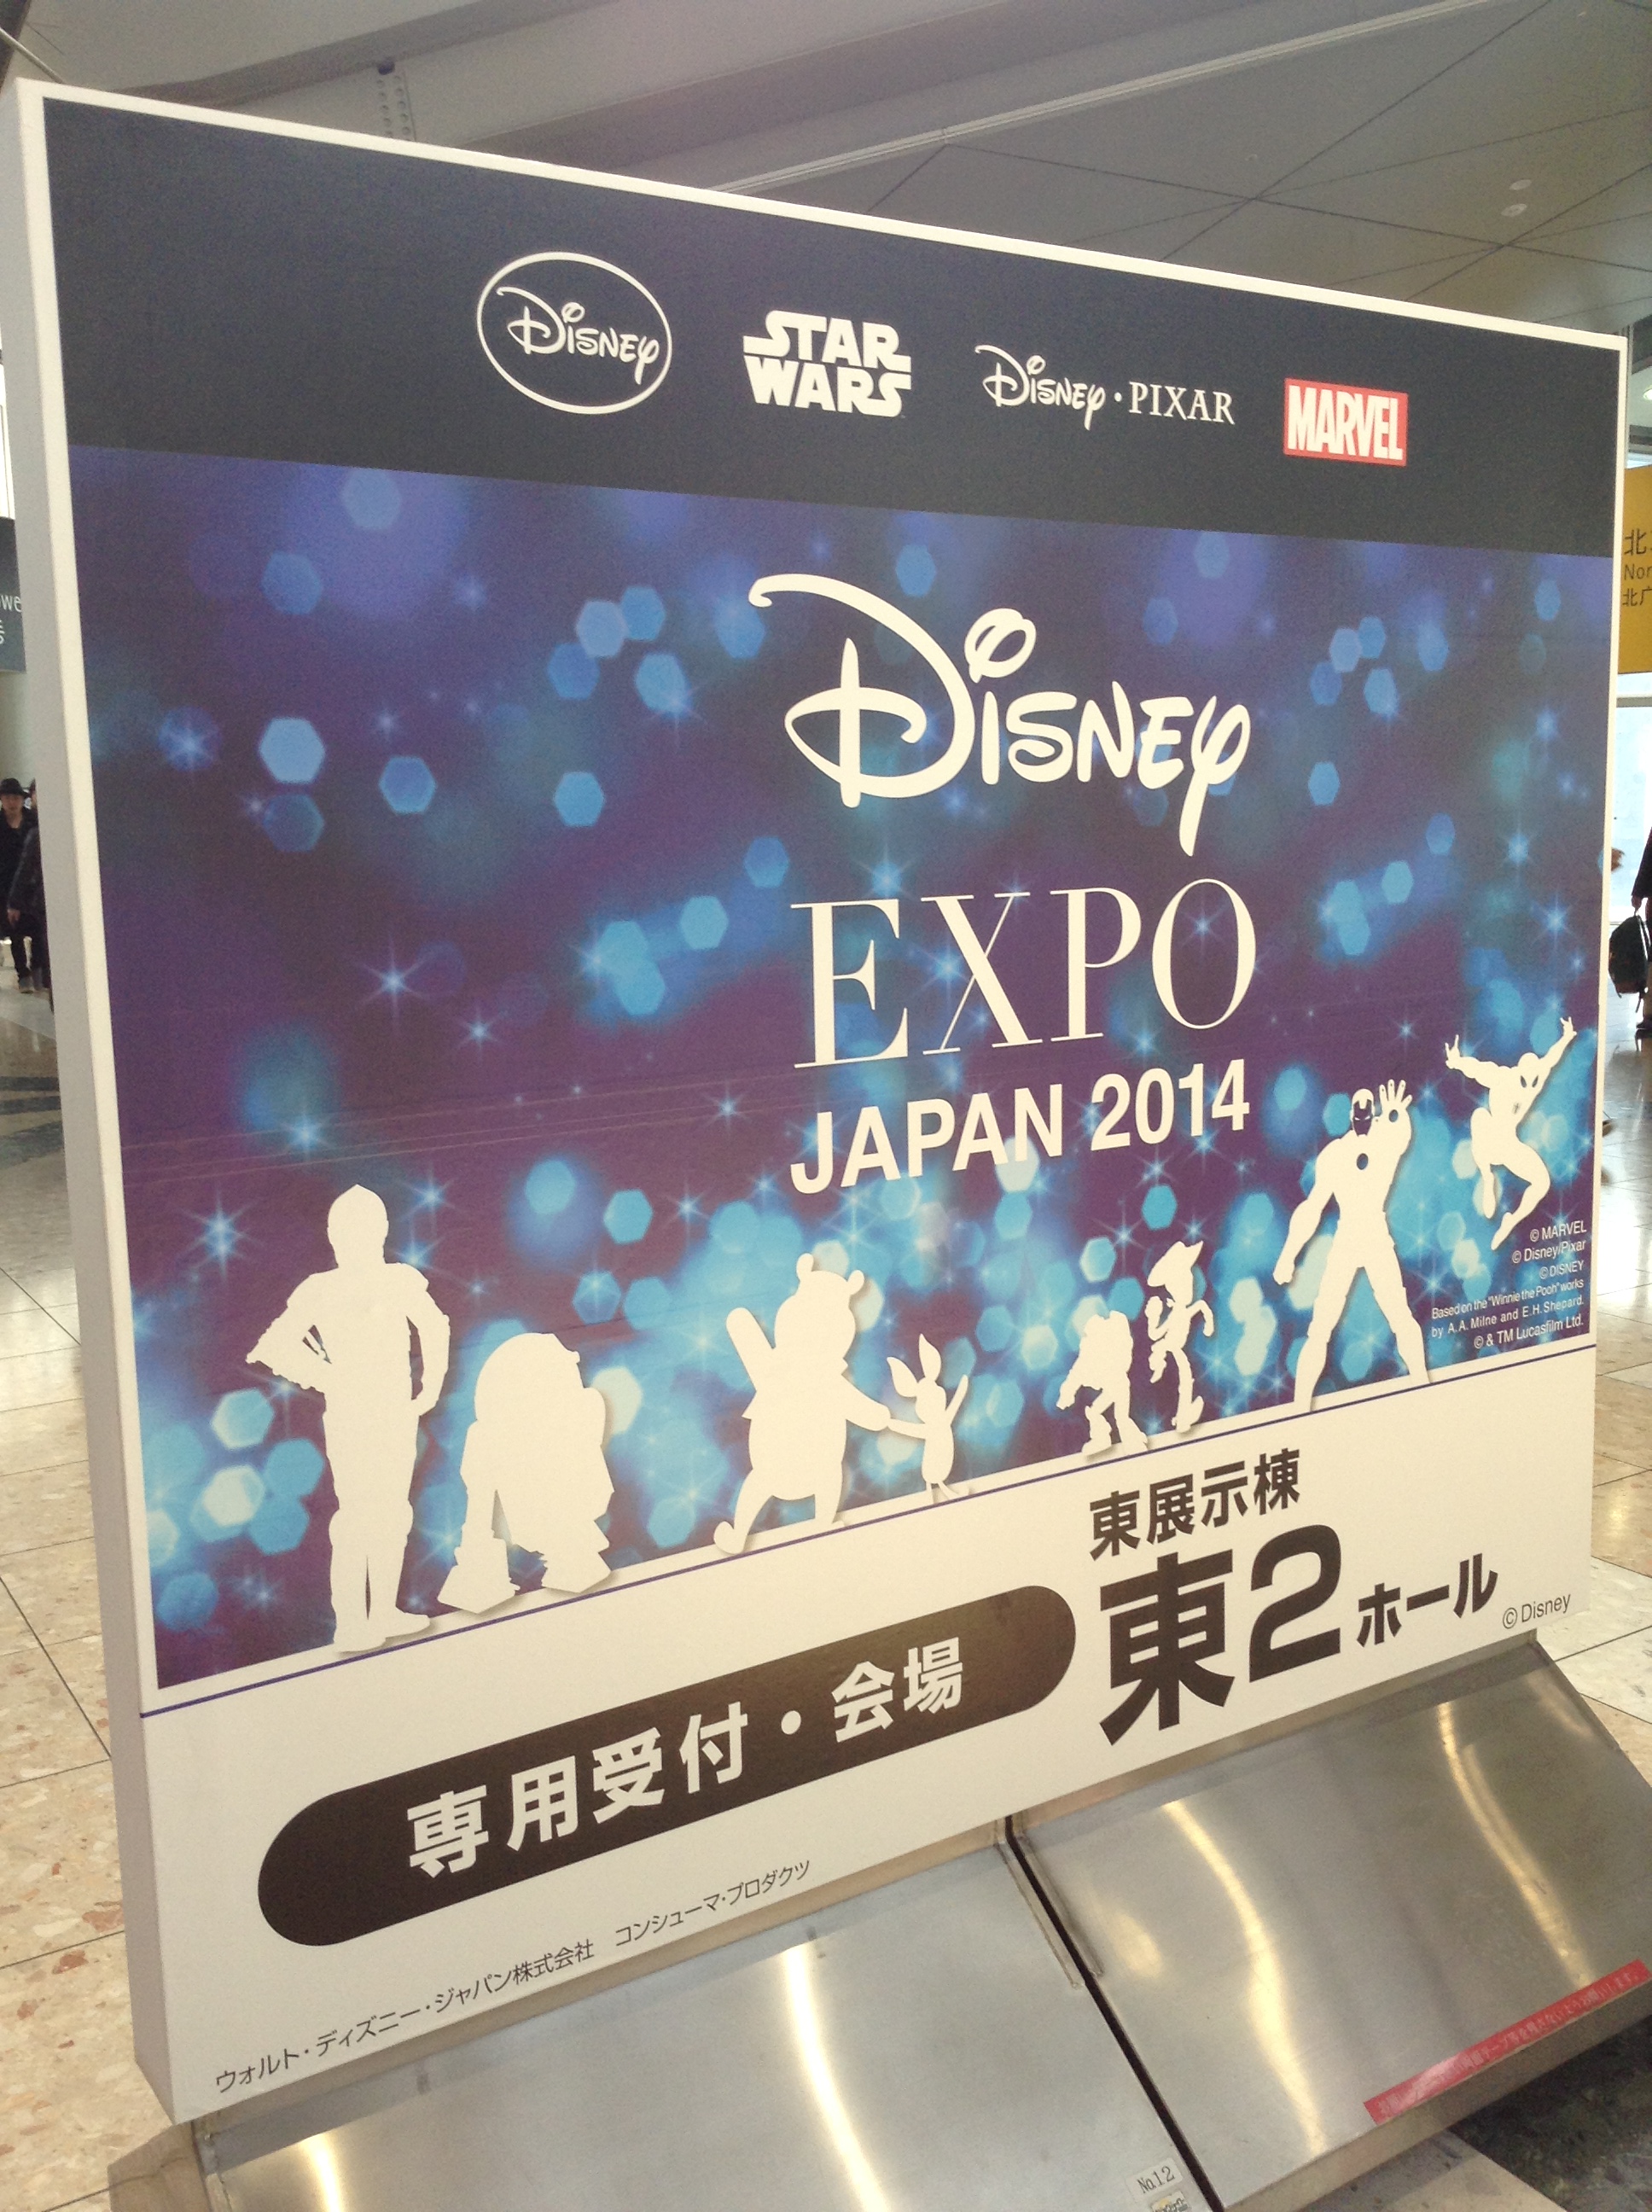 Disney Expo Japan 14で スター ウォーズ 商品続々登場 グッズ 書籍など今後ますます盛り上がる スター ウォーズ ウェブログ